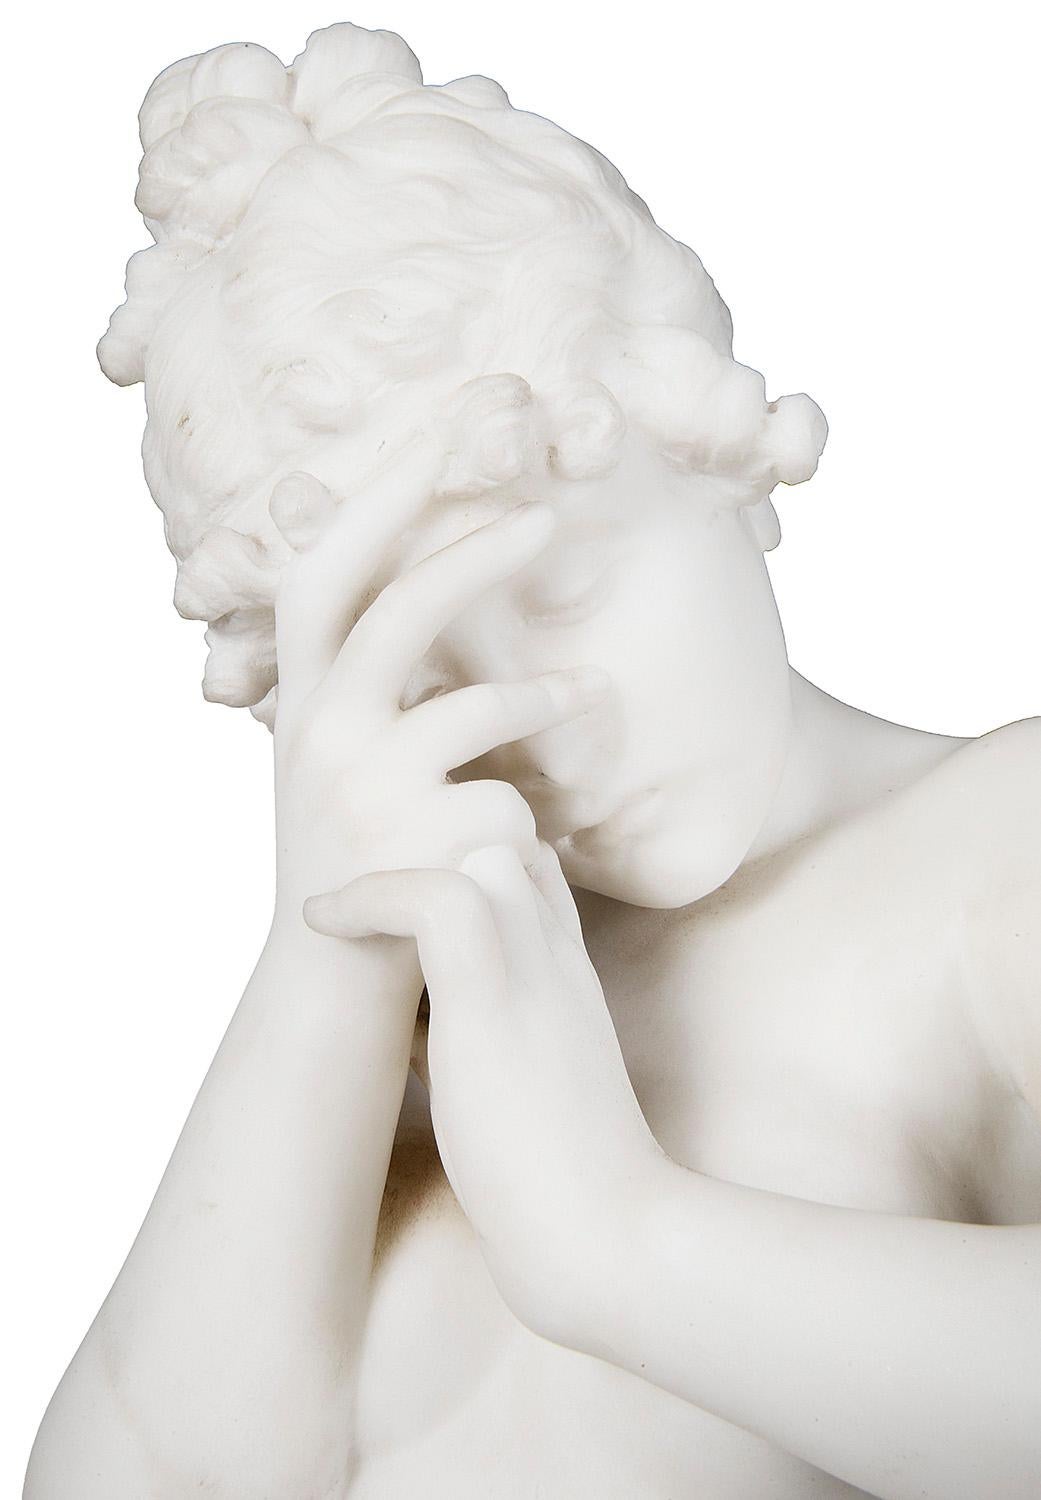 Bezaubernde italienische Carrera-Marmorstatue eines jungen nackten Mädchens aus dem 19. Jahrhundert, das in einer entmutigen Pose neben einer gebrochenen Vase steht.
 